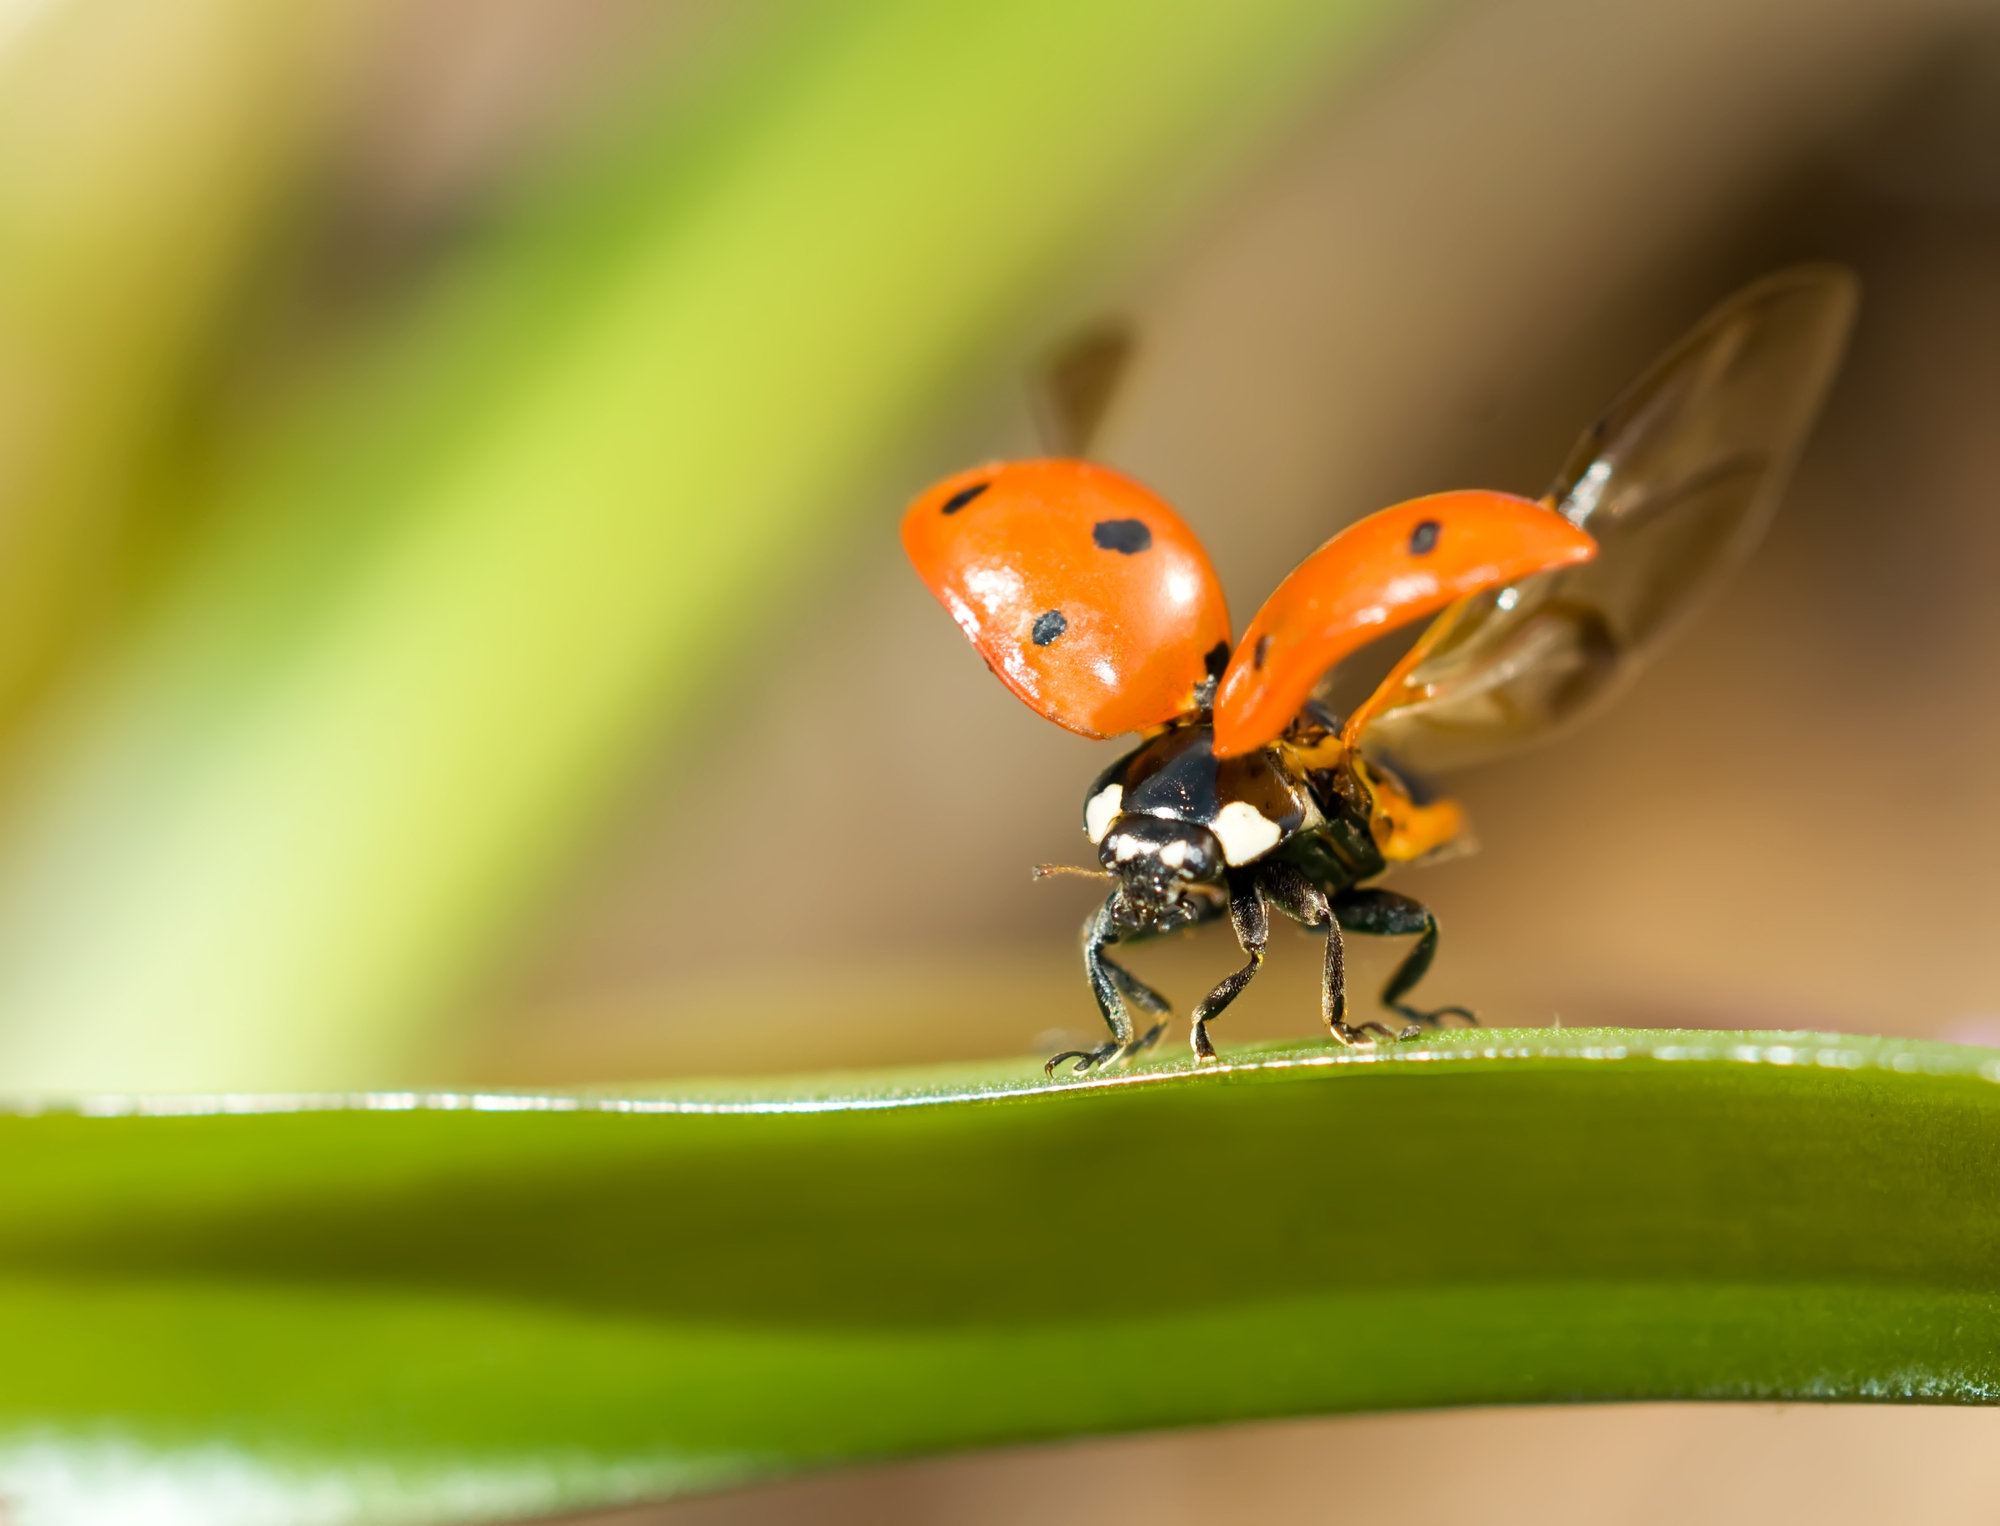 Comment vont les insectes: la lutte biologique.